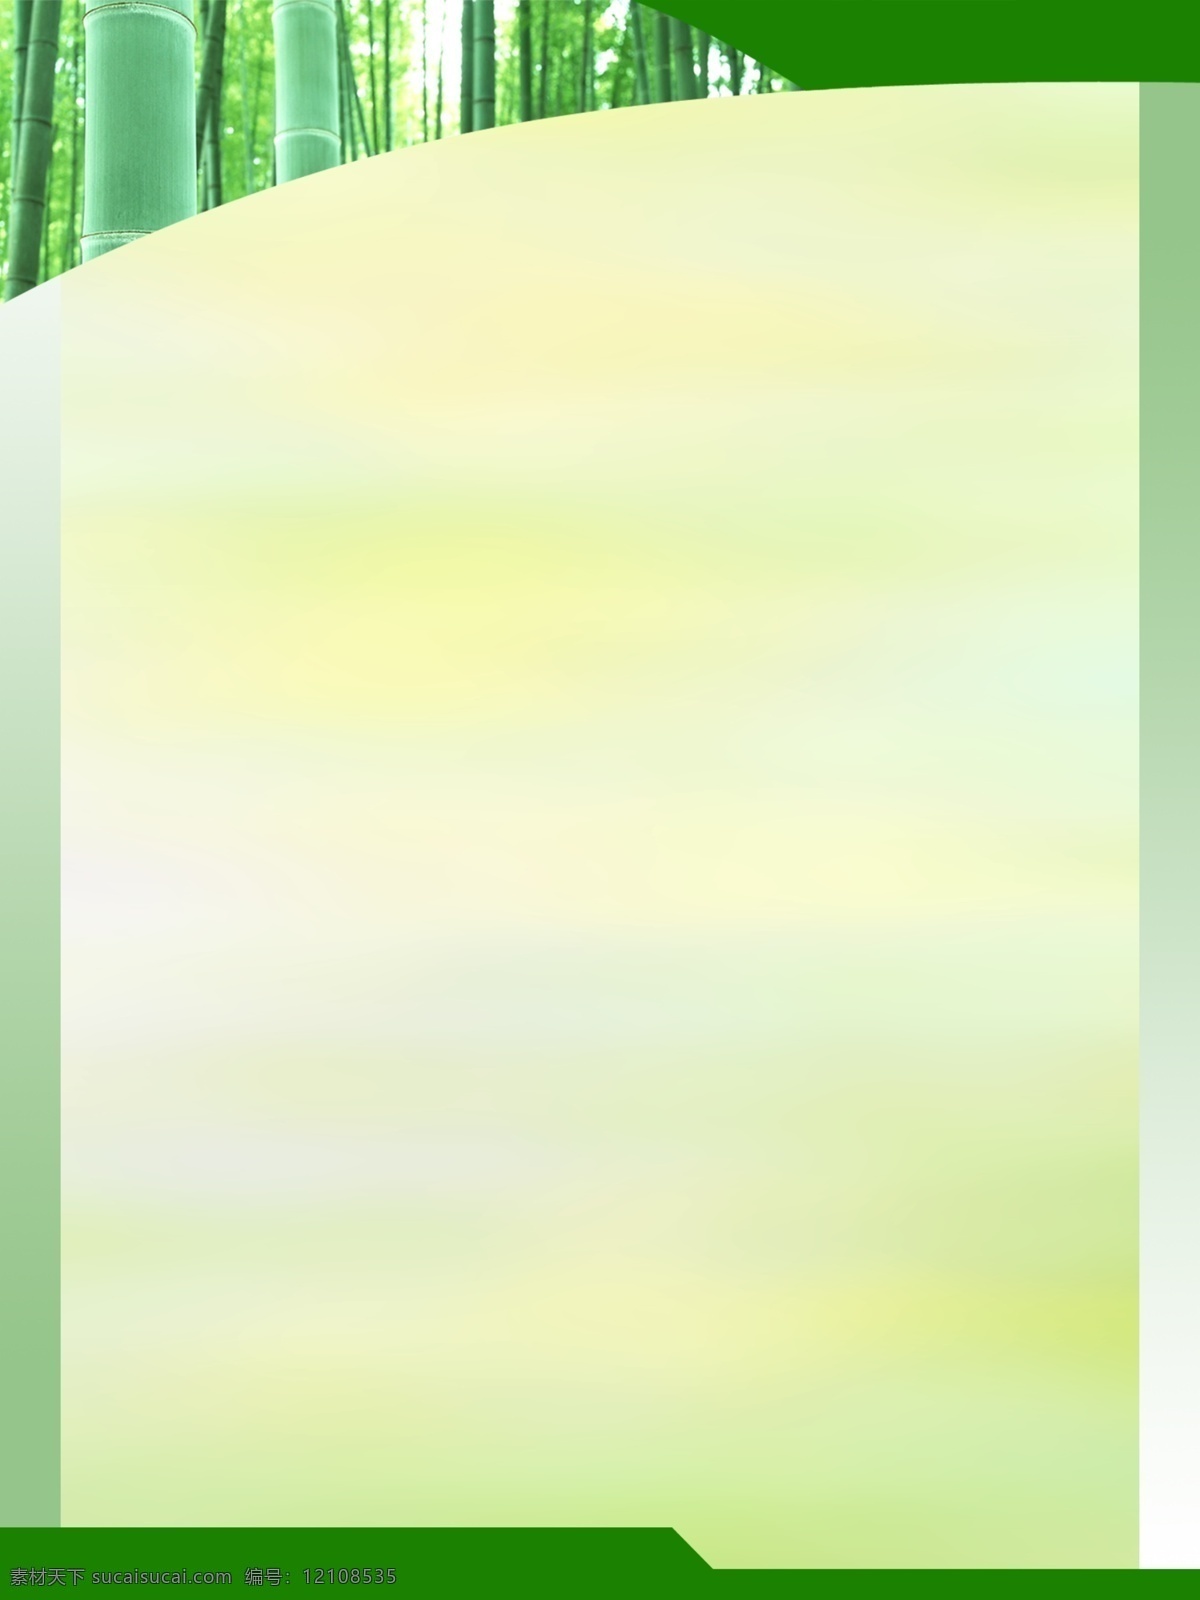 背景 背景底图 背景展板 底图 分层素材 广告设计模板 黄色 黄色背景 展板底图 展板 展板背景 绿色 绿色展板 绿色背景 绿色底图 黄色展板 黄色底图 展板素材 展板模板 源文件 其他展板设计